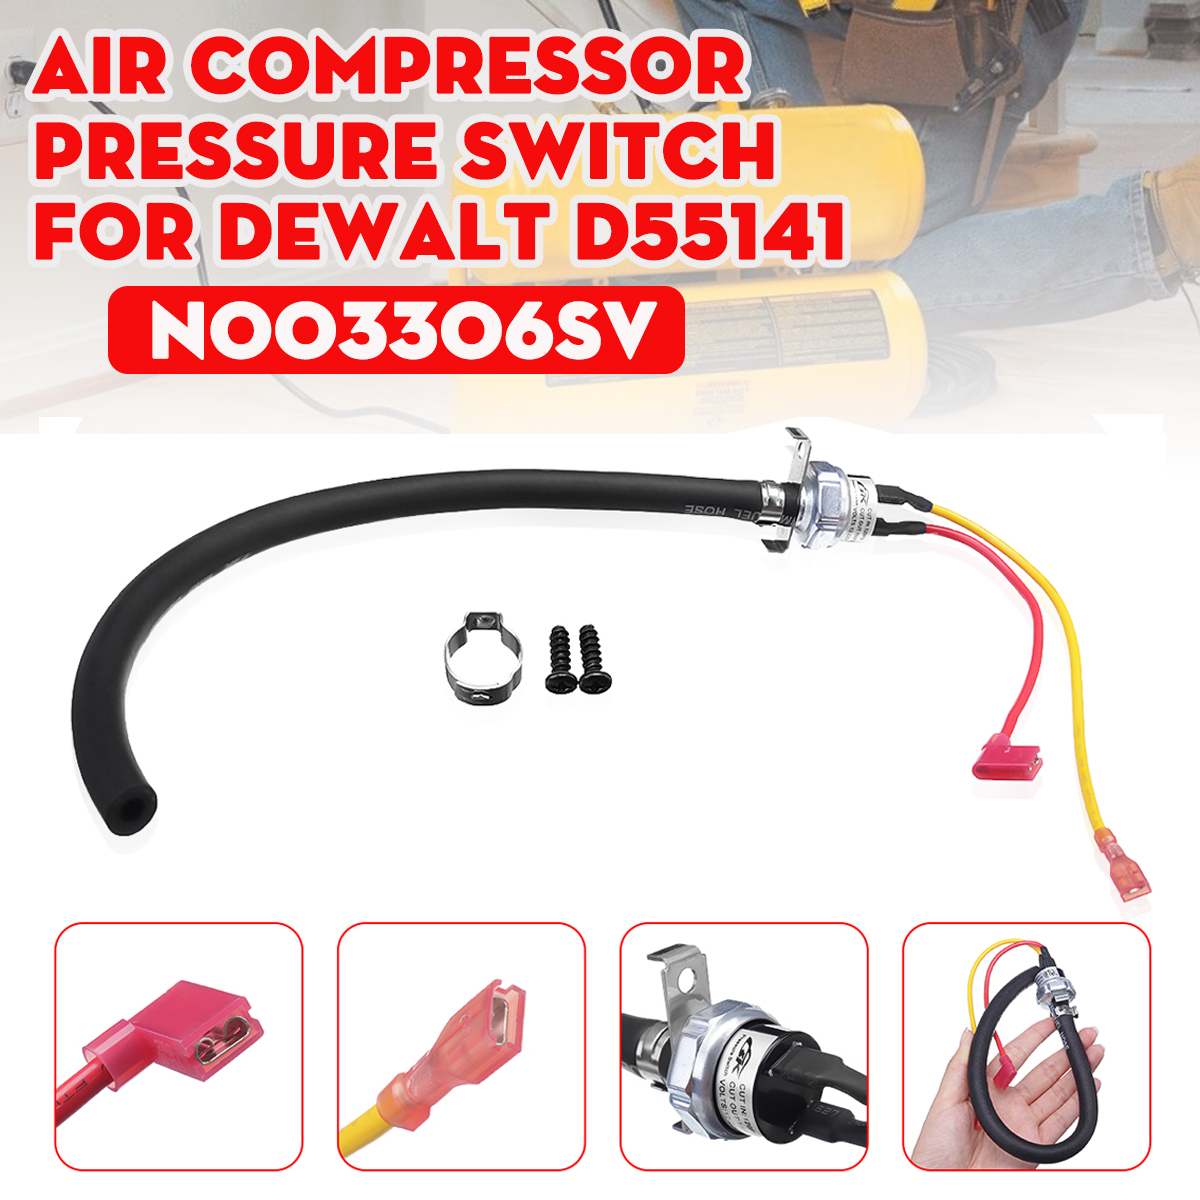 N003306SV Dewalt Air Compressor Pressure Switch Kit Fits D55141 for sale online